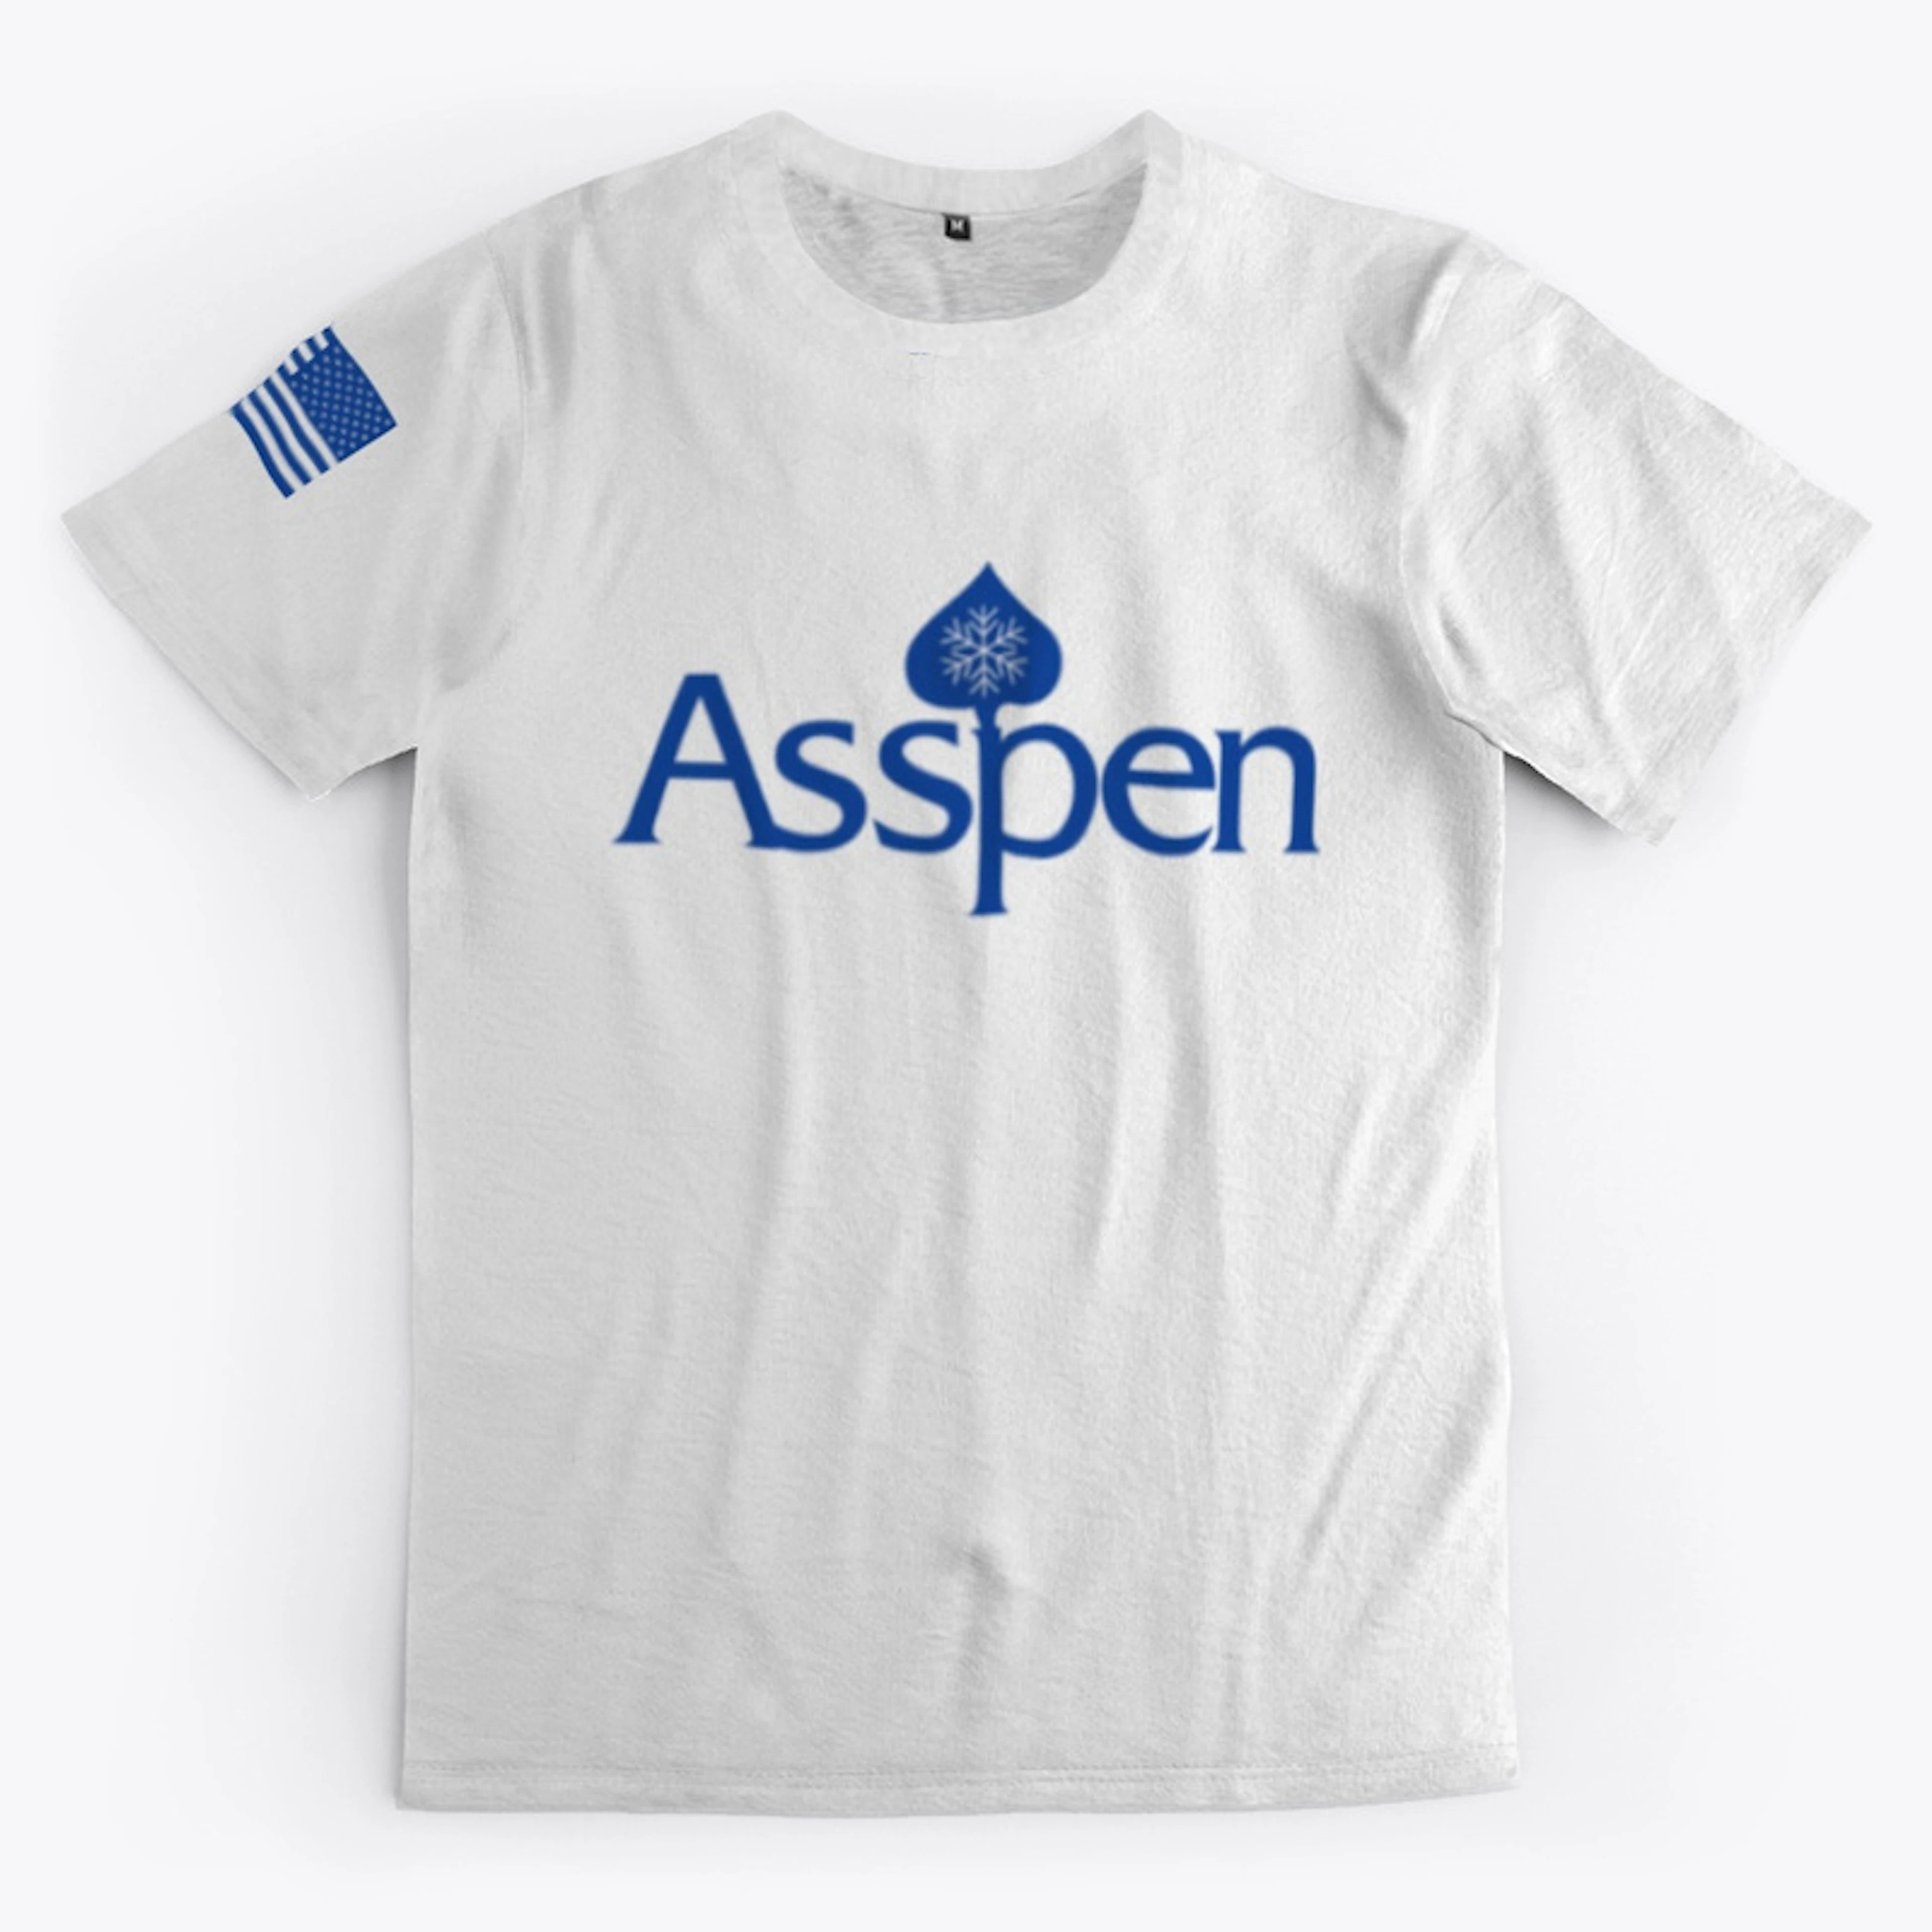 ASSpen T-Shirt